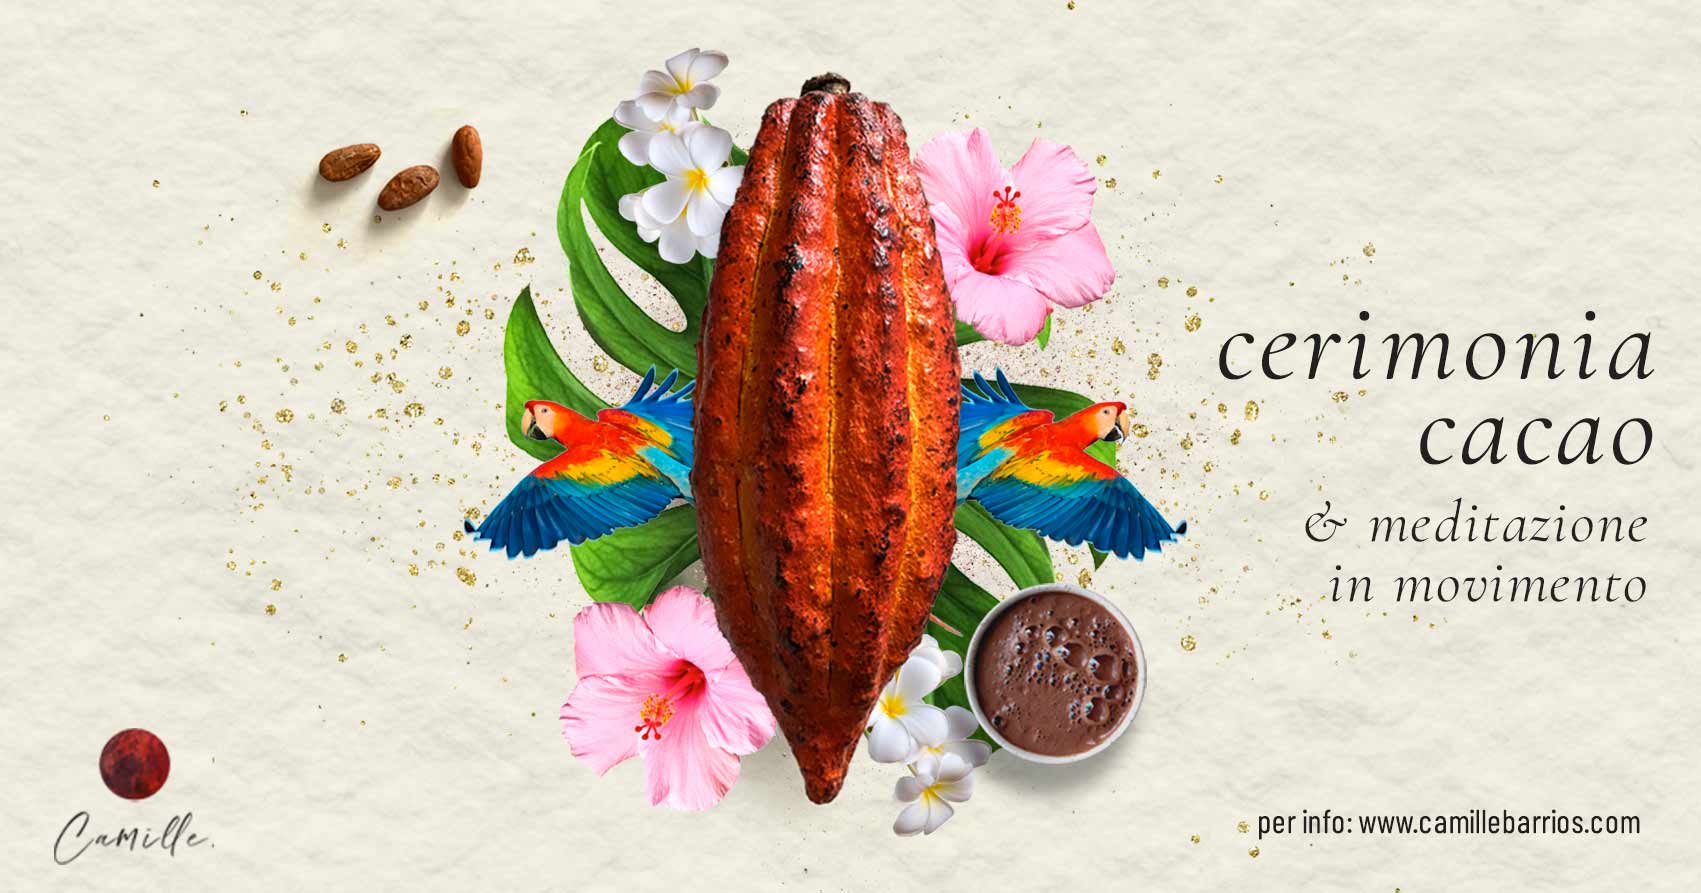 cerimonia cacao milano cerimonia cacao online Cacao online ceremony